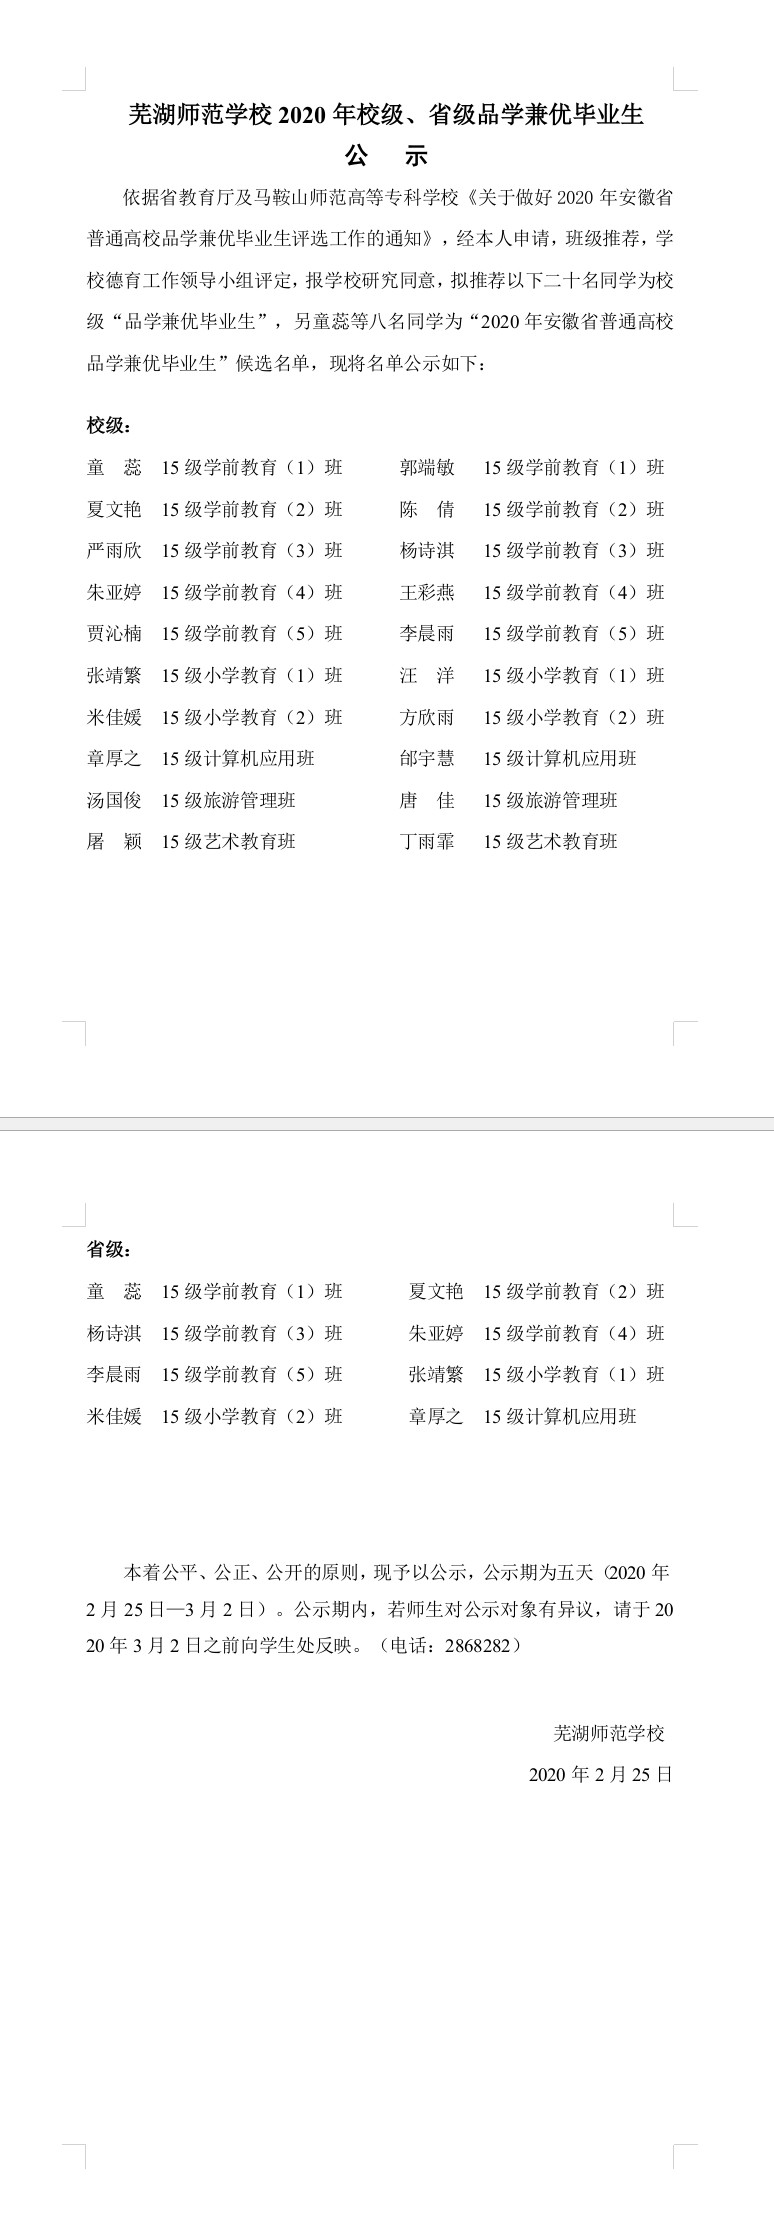 芜湖师范学校2020年校级、省级品学兼优毕业生公示